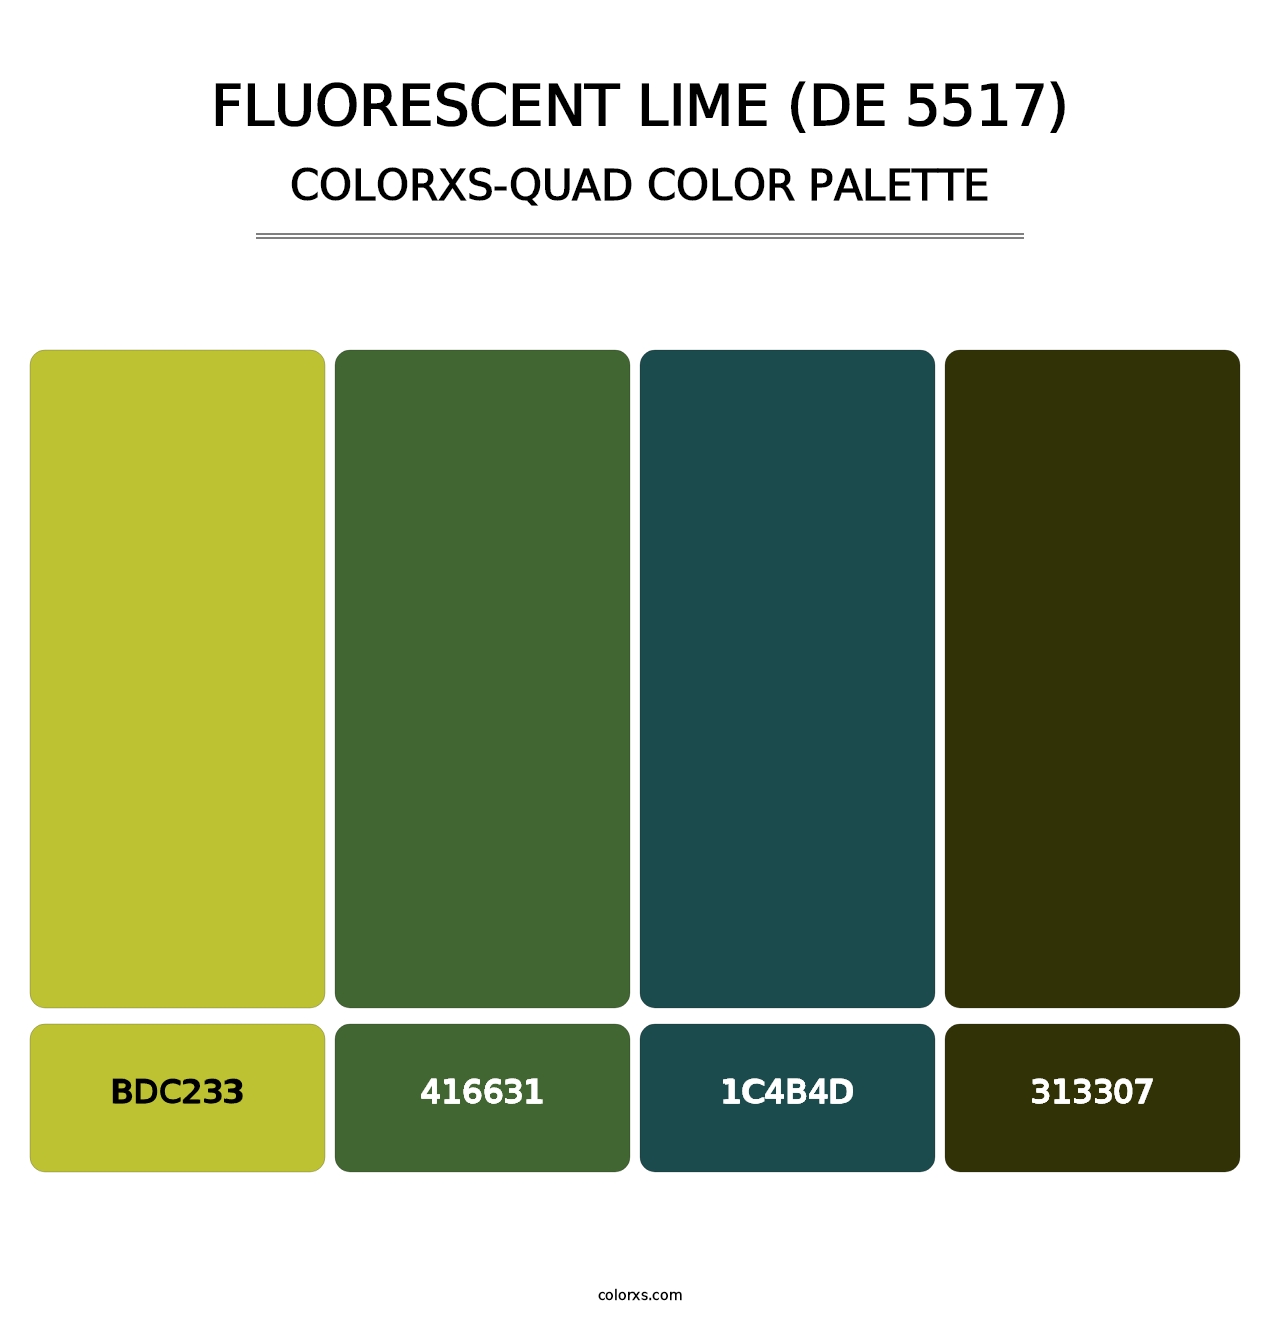 Fluorescent Lime (DE 5517) - Colorxs Quad Palette